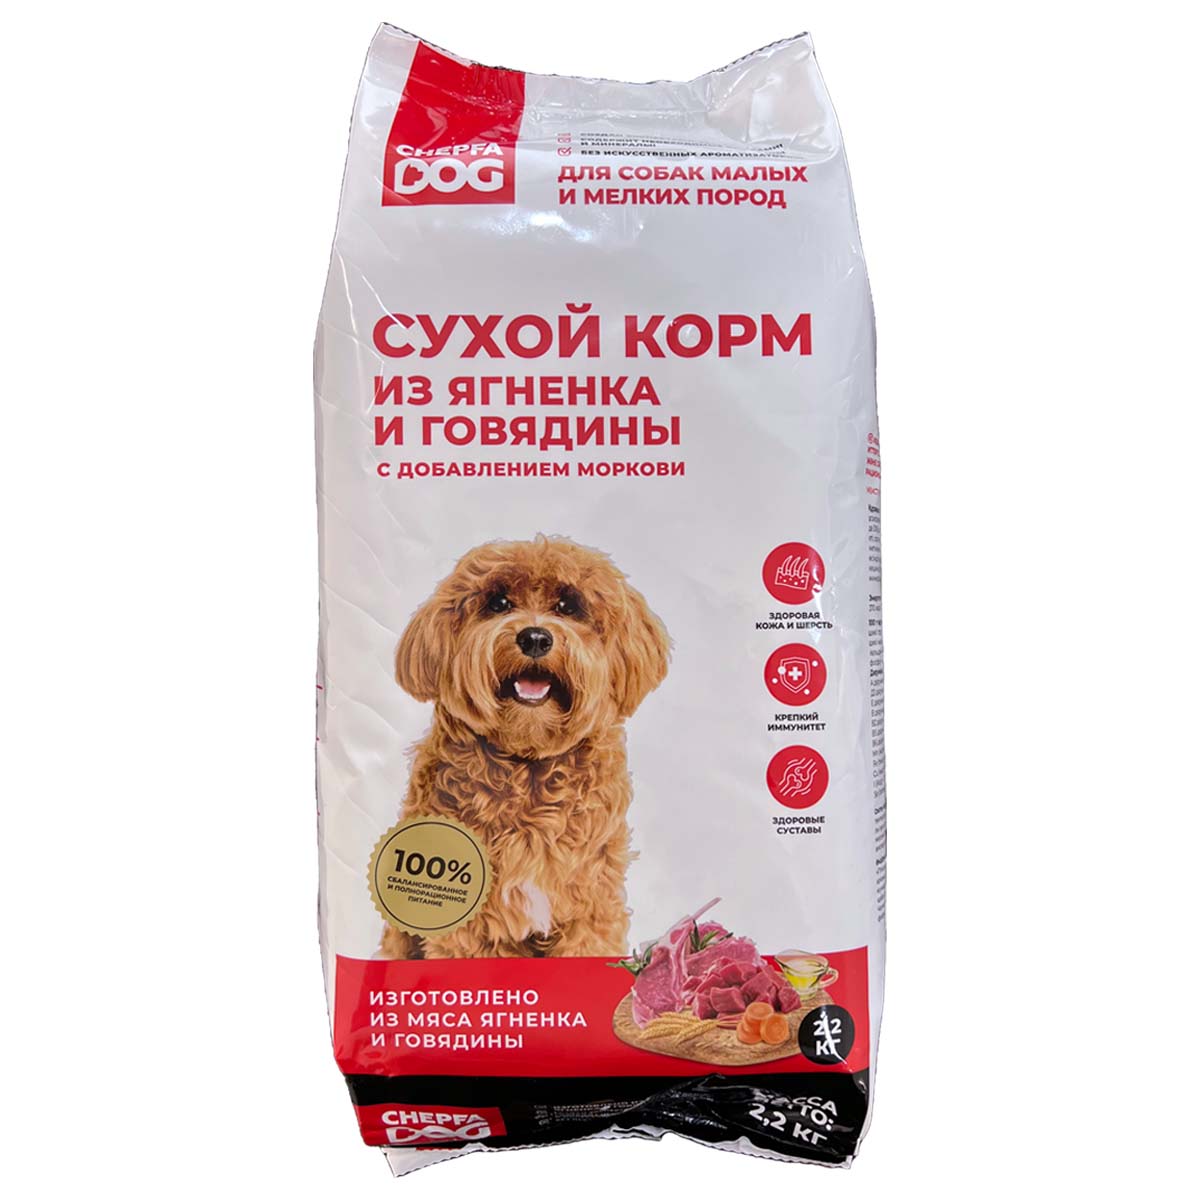 Сухой корм для собак Chepfa Dog Полнорационный ягненок и говядина 2.2 кг для взрослых собак малых и мелких пород - фото 1